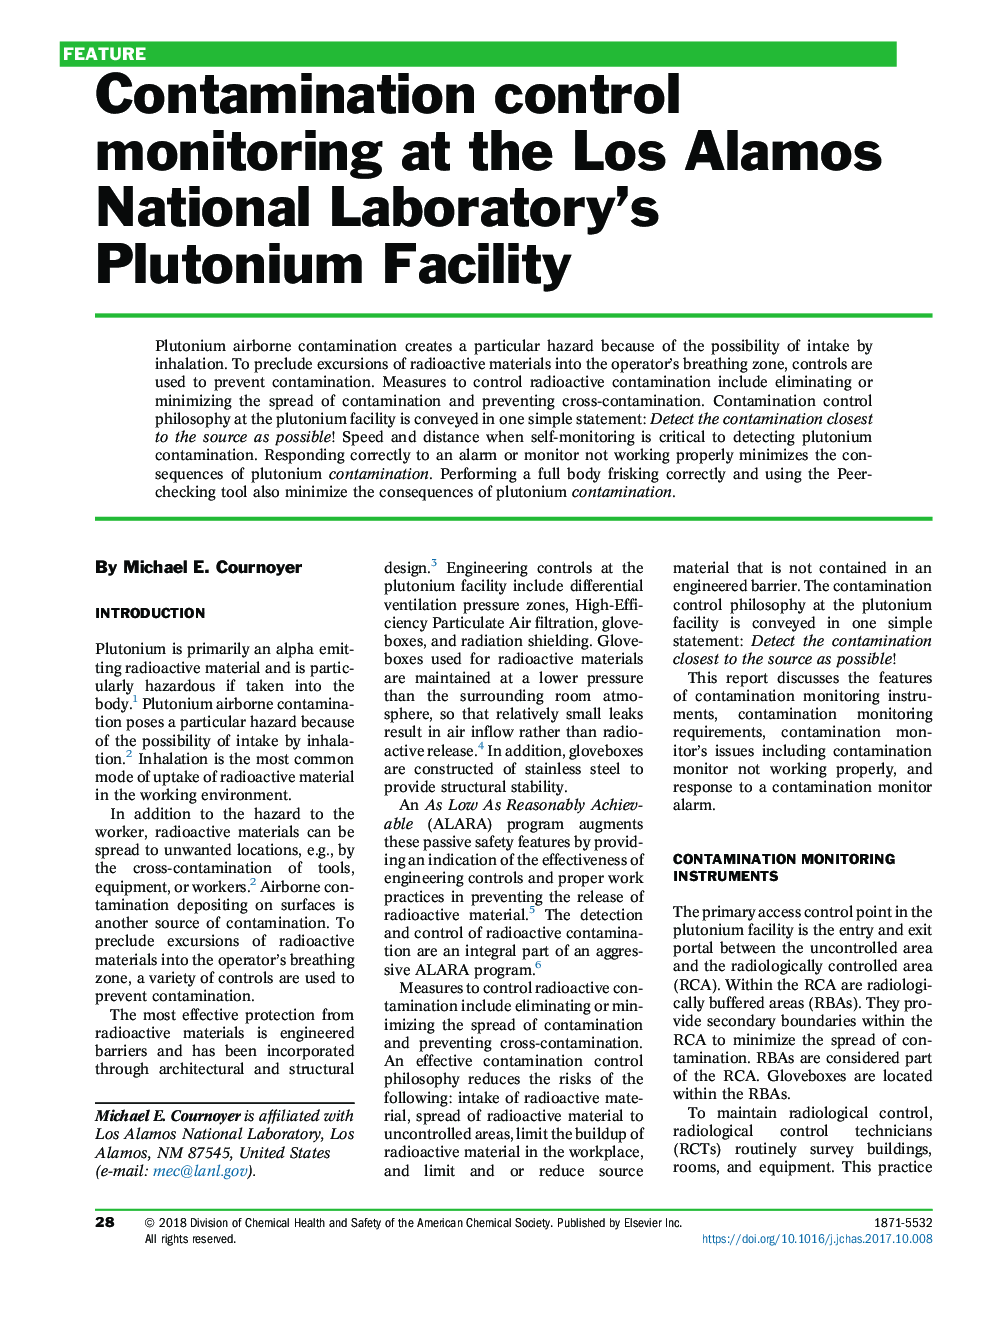 نظارت بر کنترل آلودگی در تاسیسات پلوتونیوم آزمایشگاه ملی لوس آلاموس 